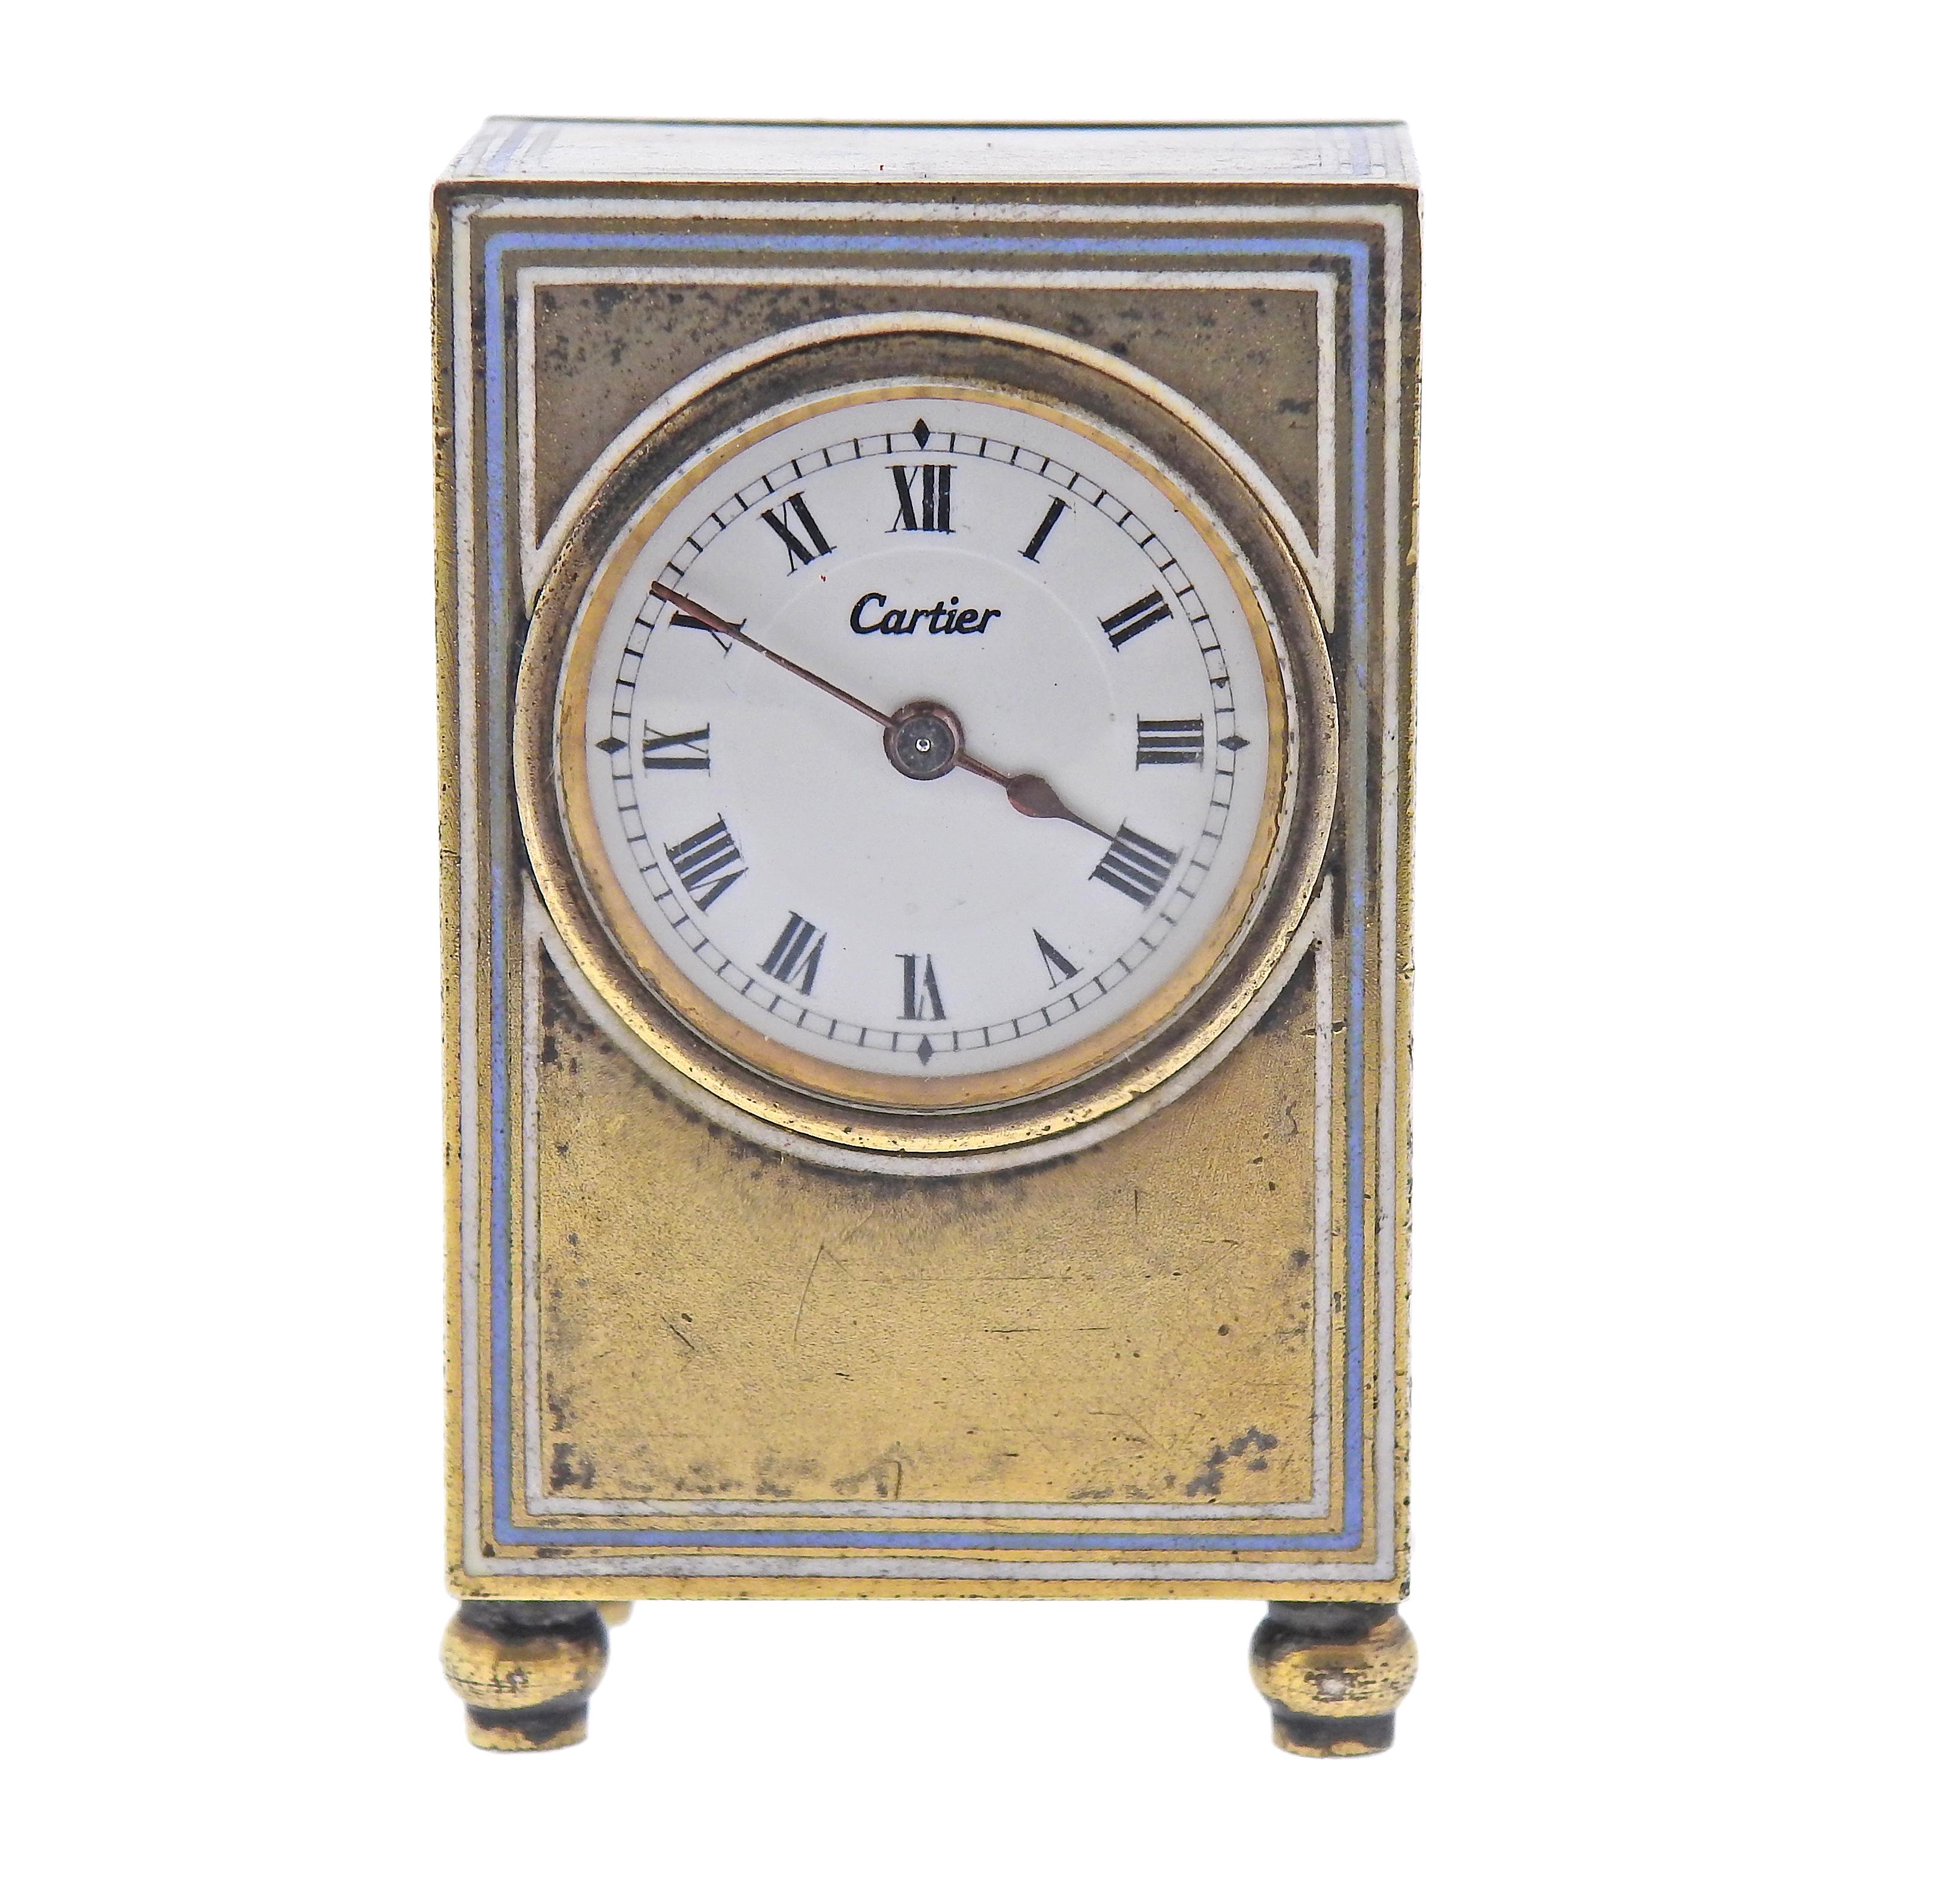 Horloge de bureau/de voyage ancienne en argent sterling de Cartier avec remontoir à clé et boîte d'origine. L'horloge mesure 1,75